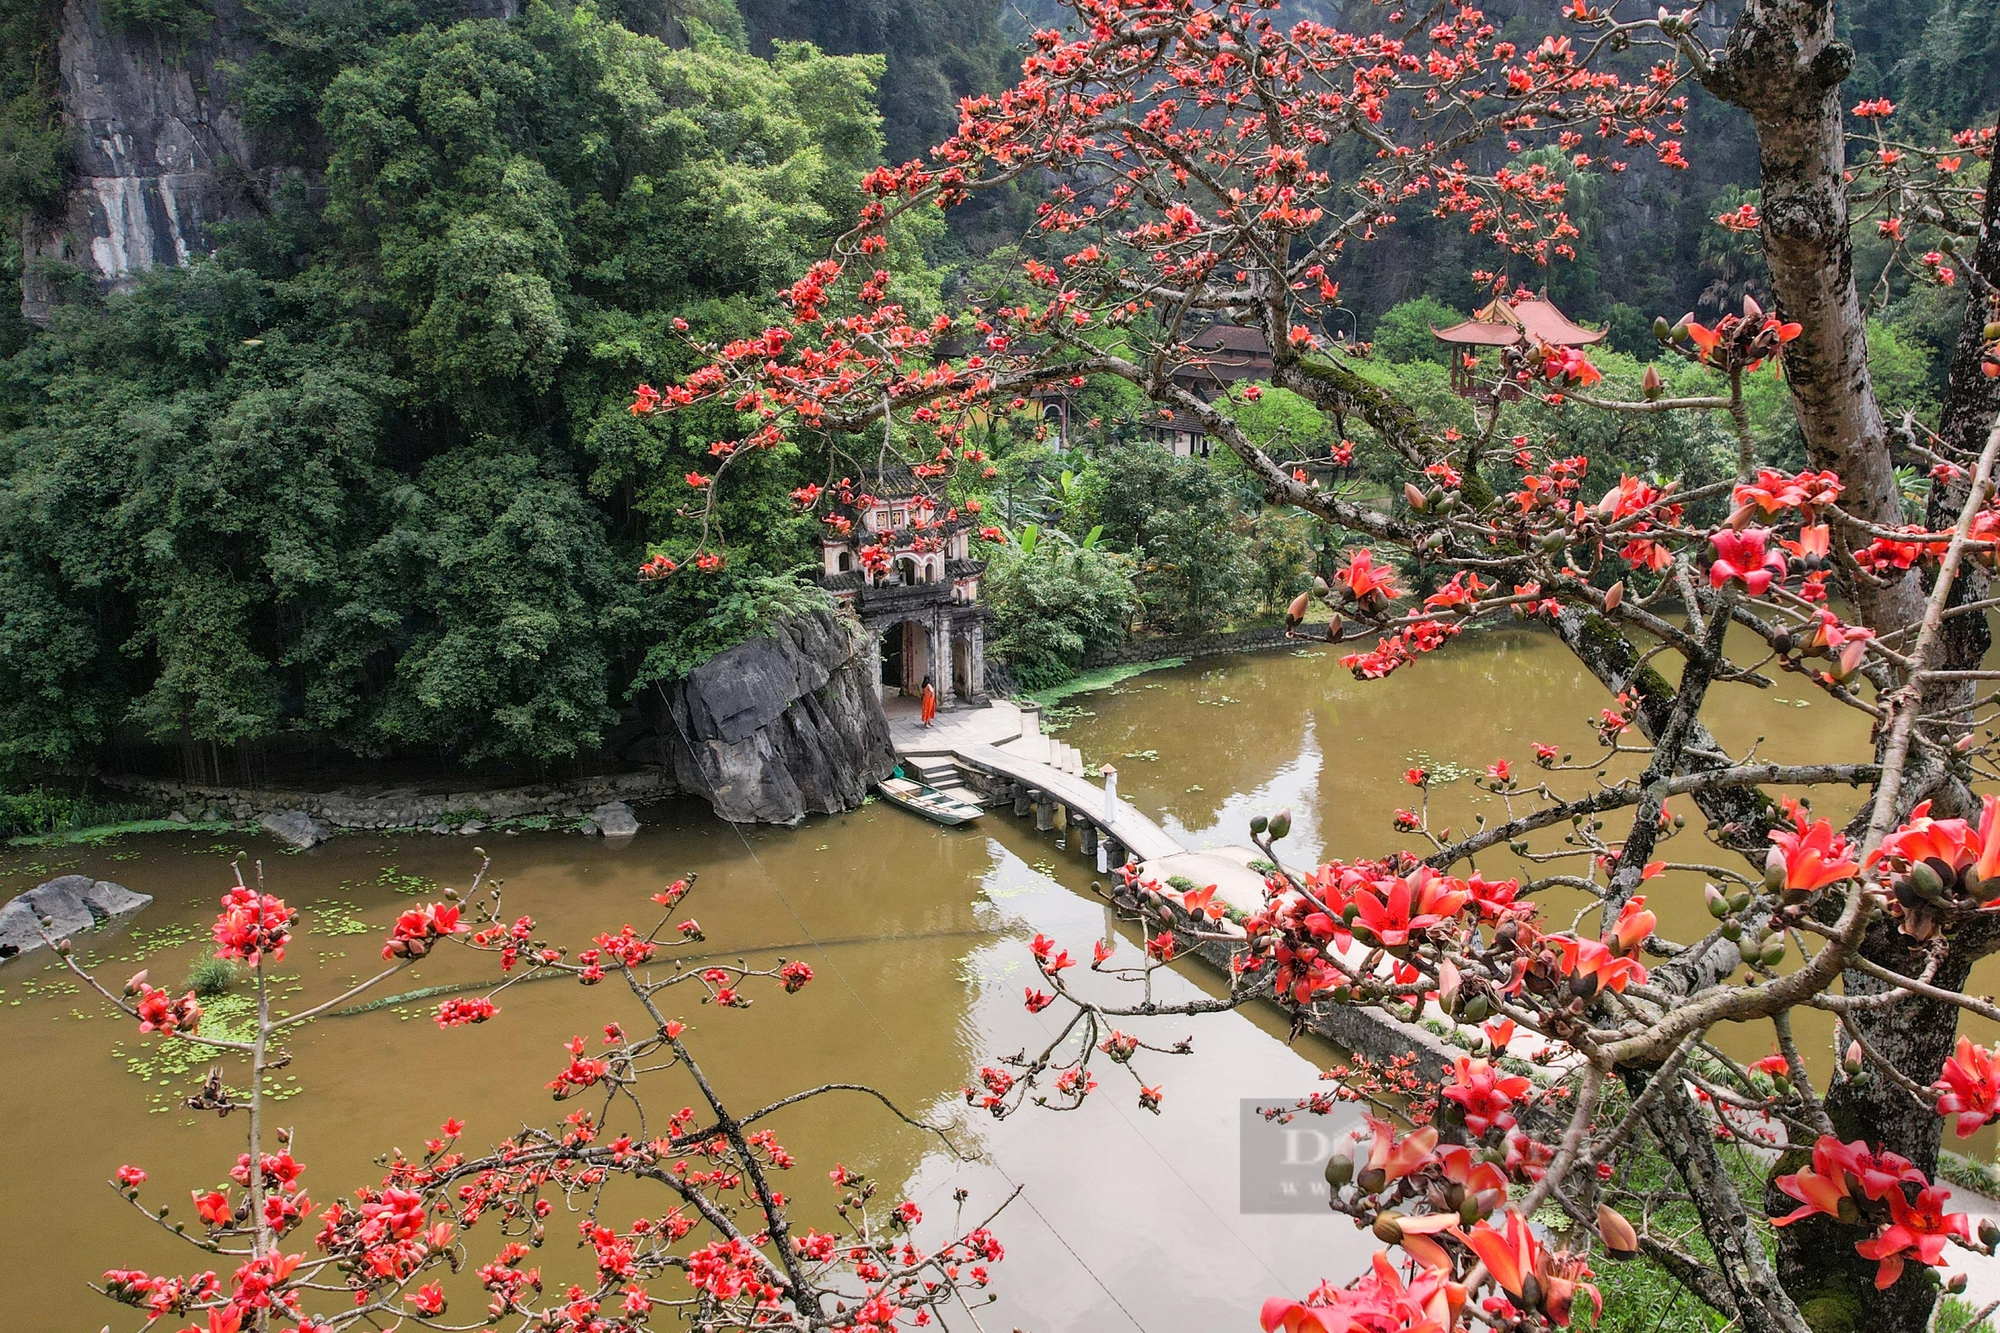 Chiêm ngưỡng sắc đỏ của cây hoa gạo trăm tuổi "đẹp nhất" Ninh Bình- Ảnh 4.